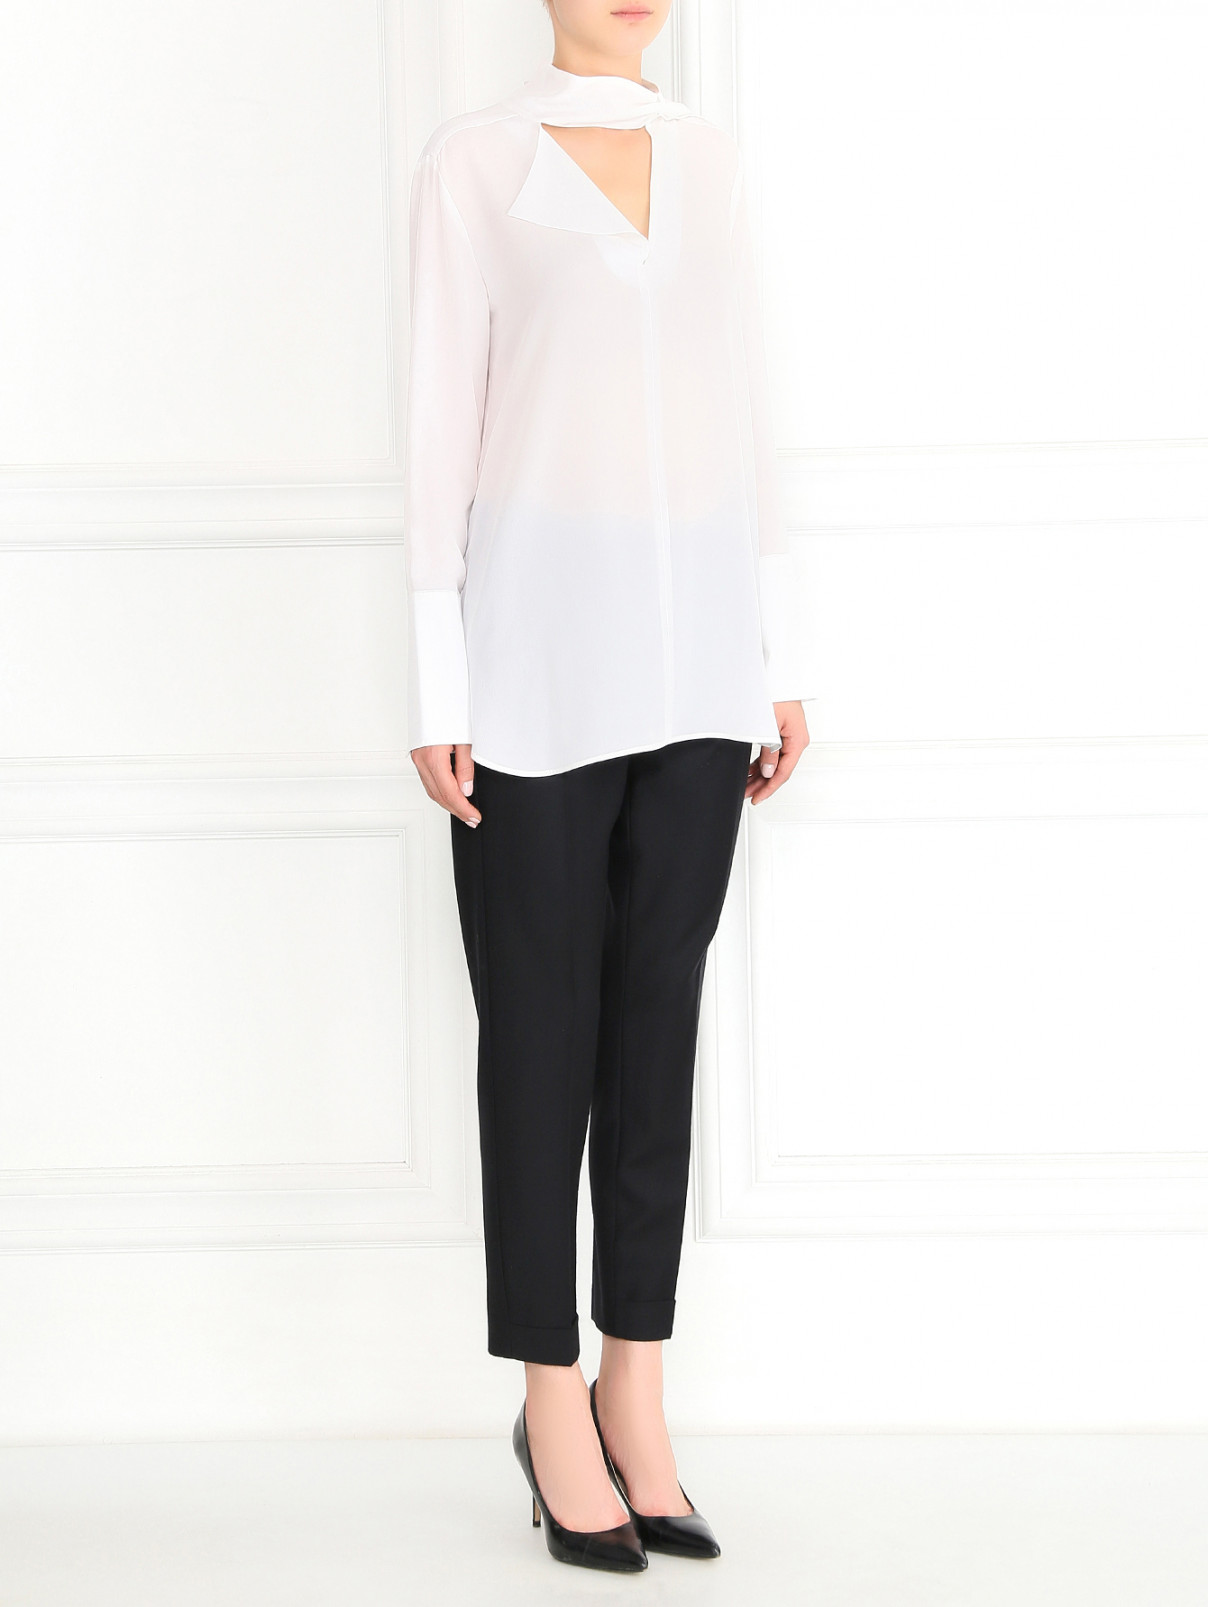 Блуза из шелка с драпировкой Sportmax  –  Модель Общий вид  – Цвет:  Белый